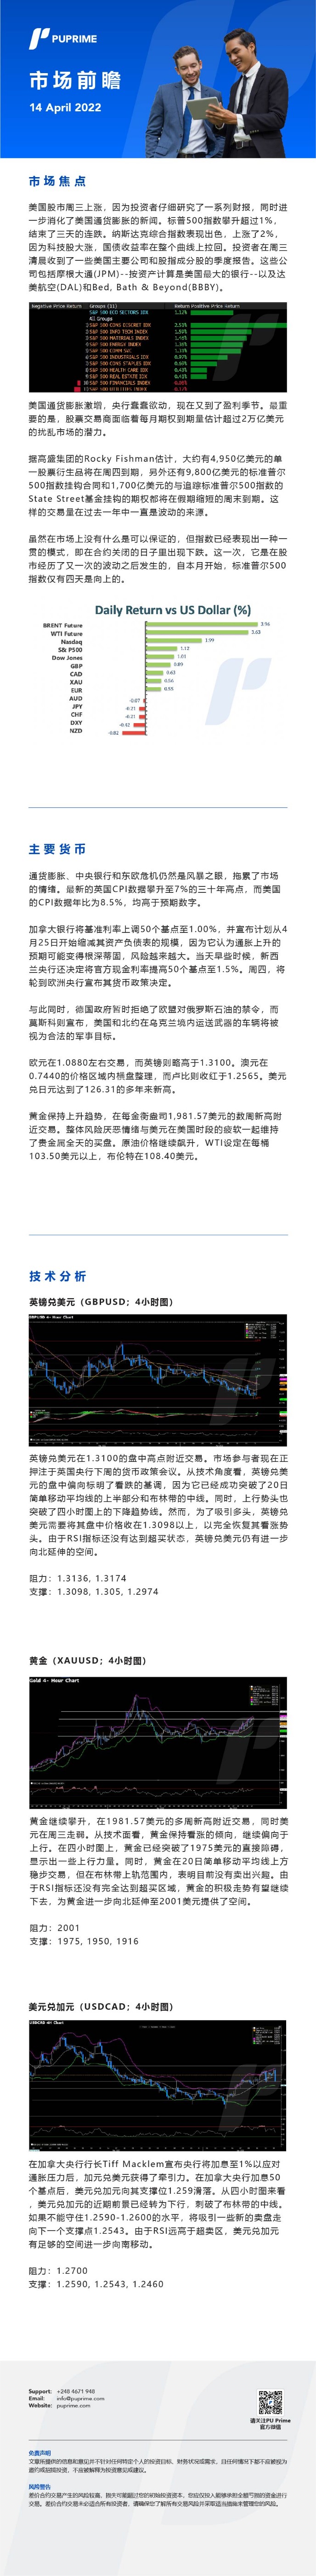 14042022 Daily Market Analysis__CHN.jpg